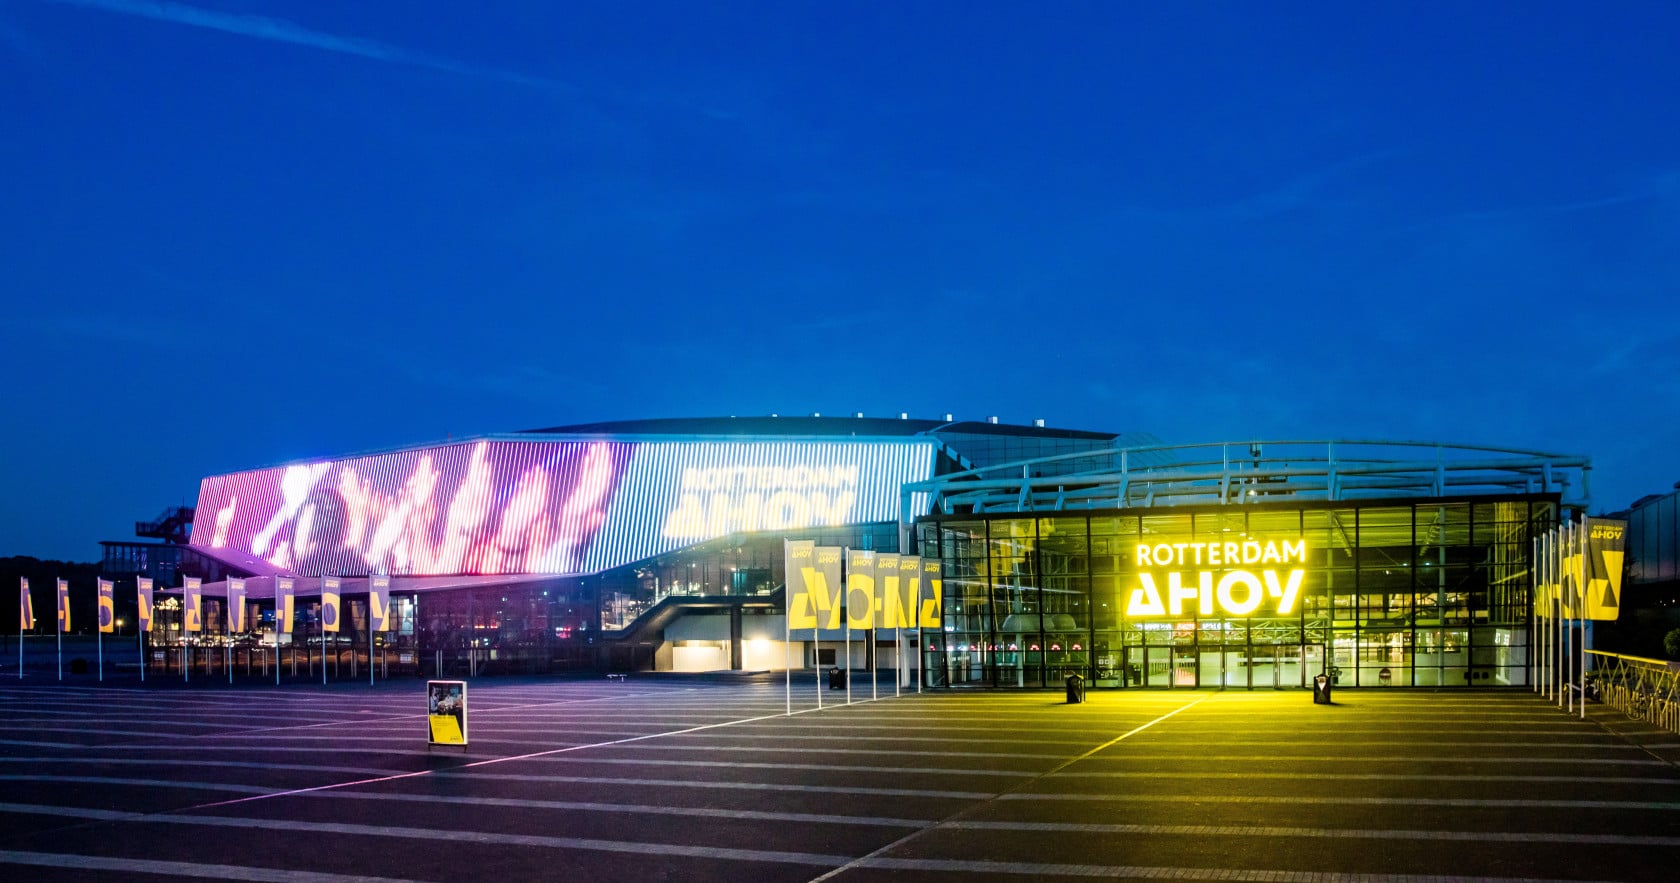 A 2021-es Eurovíziós Dalfesztivál helyszíne, a Ahoy Aréna - a Rotterdam Ahoy fotója